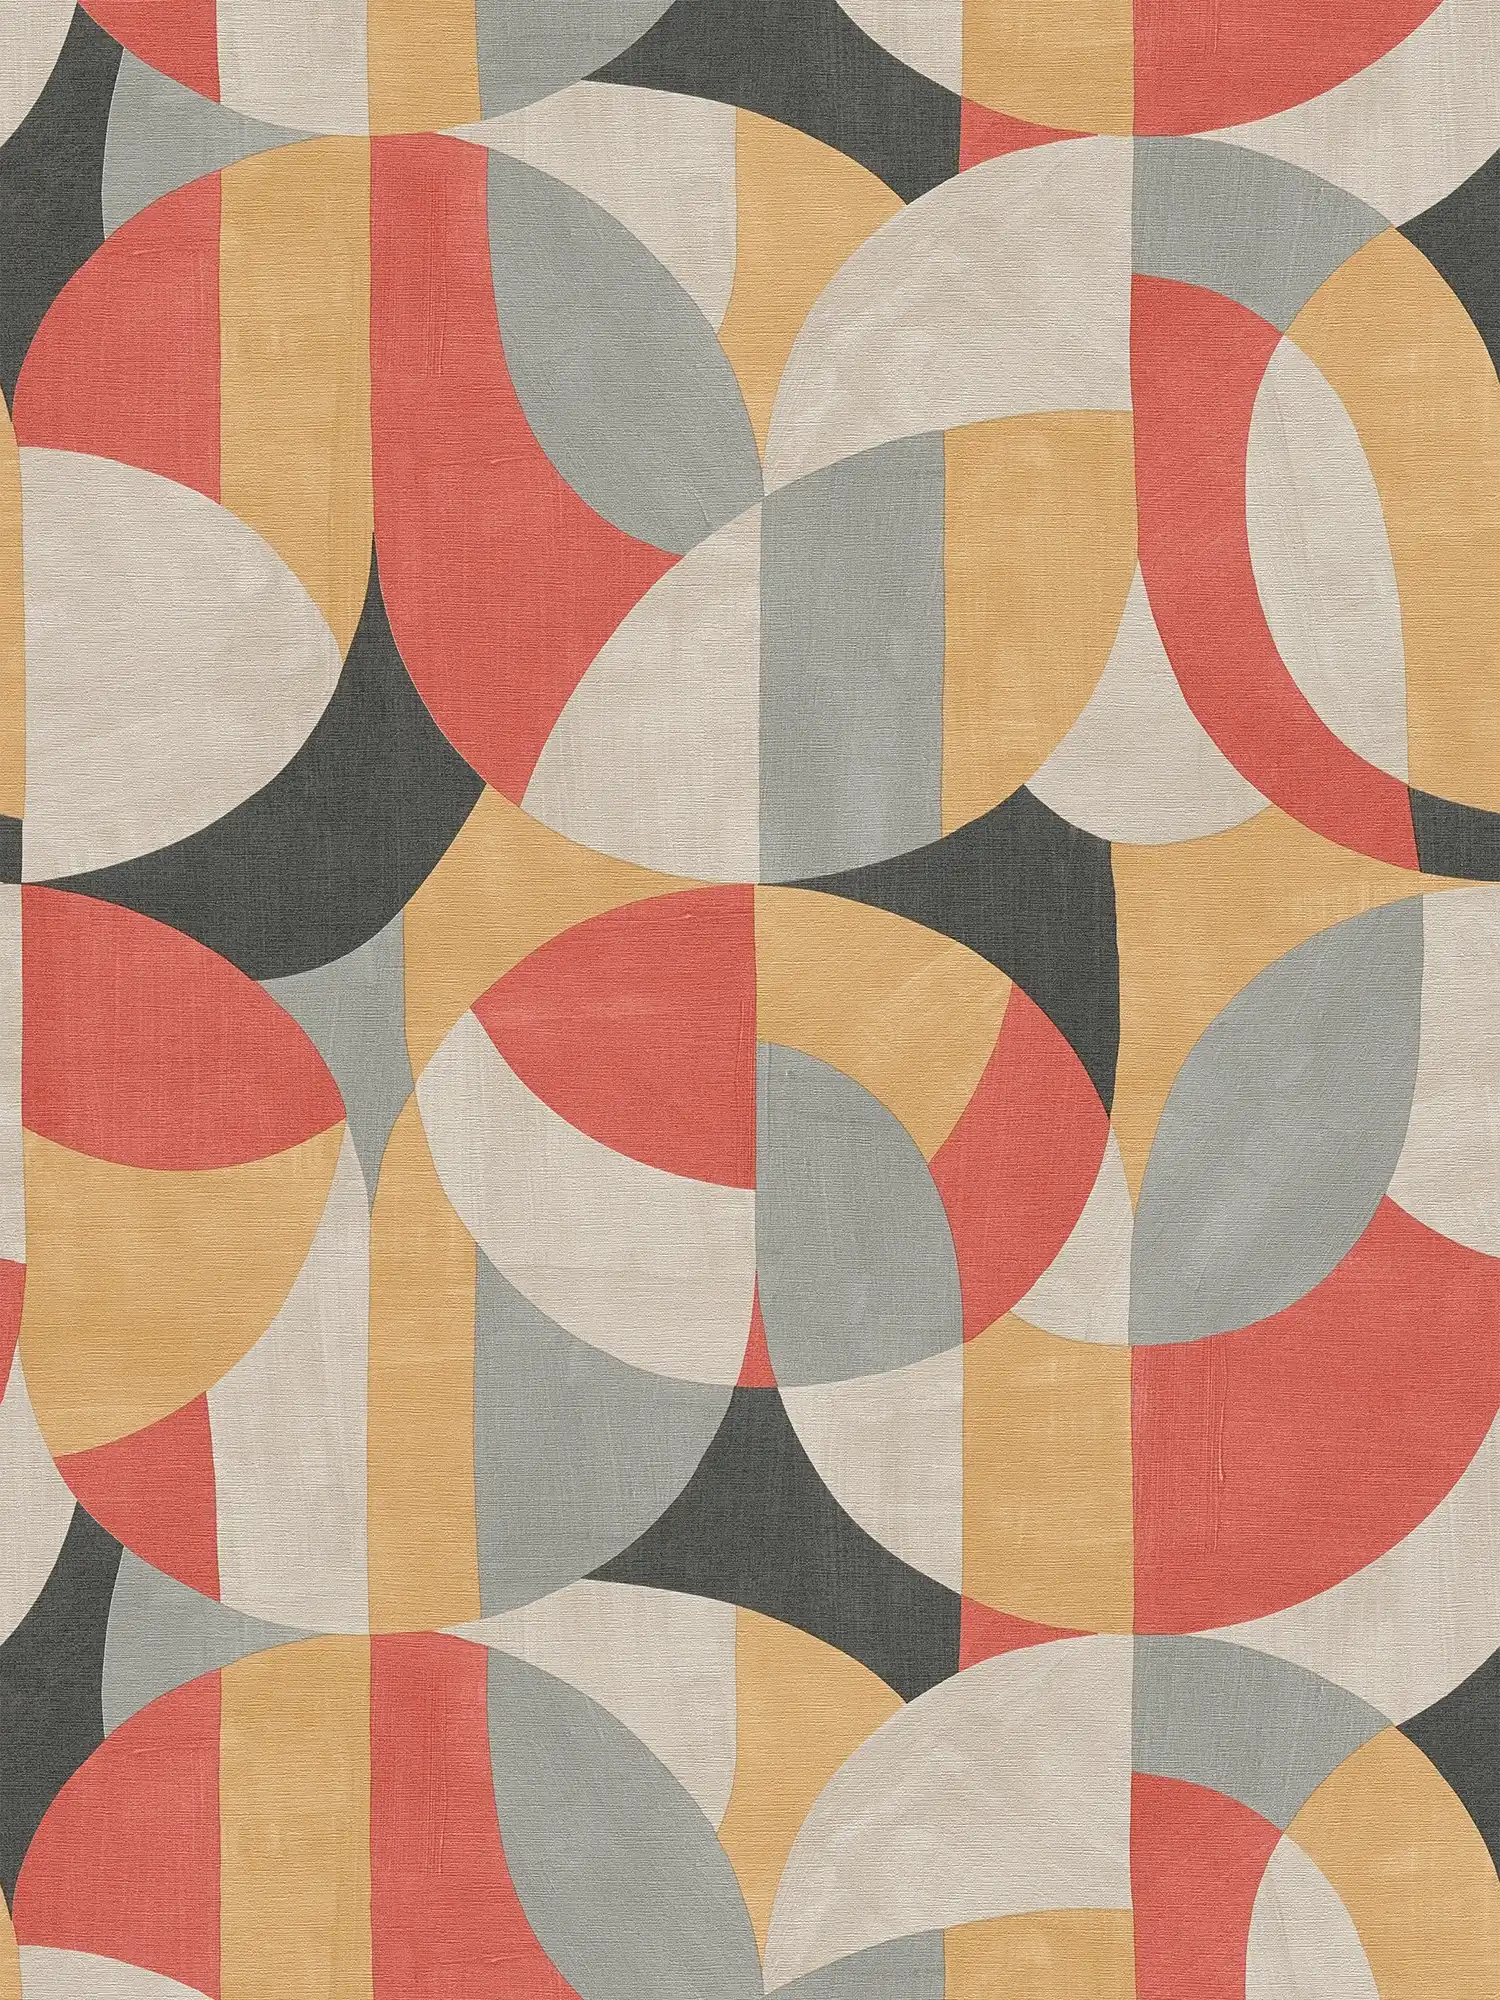 3D Vliestapete im geometrischen Bauhaus-Stil – Grau, Beige, Rot
